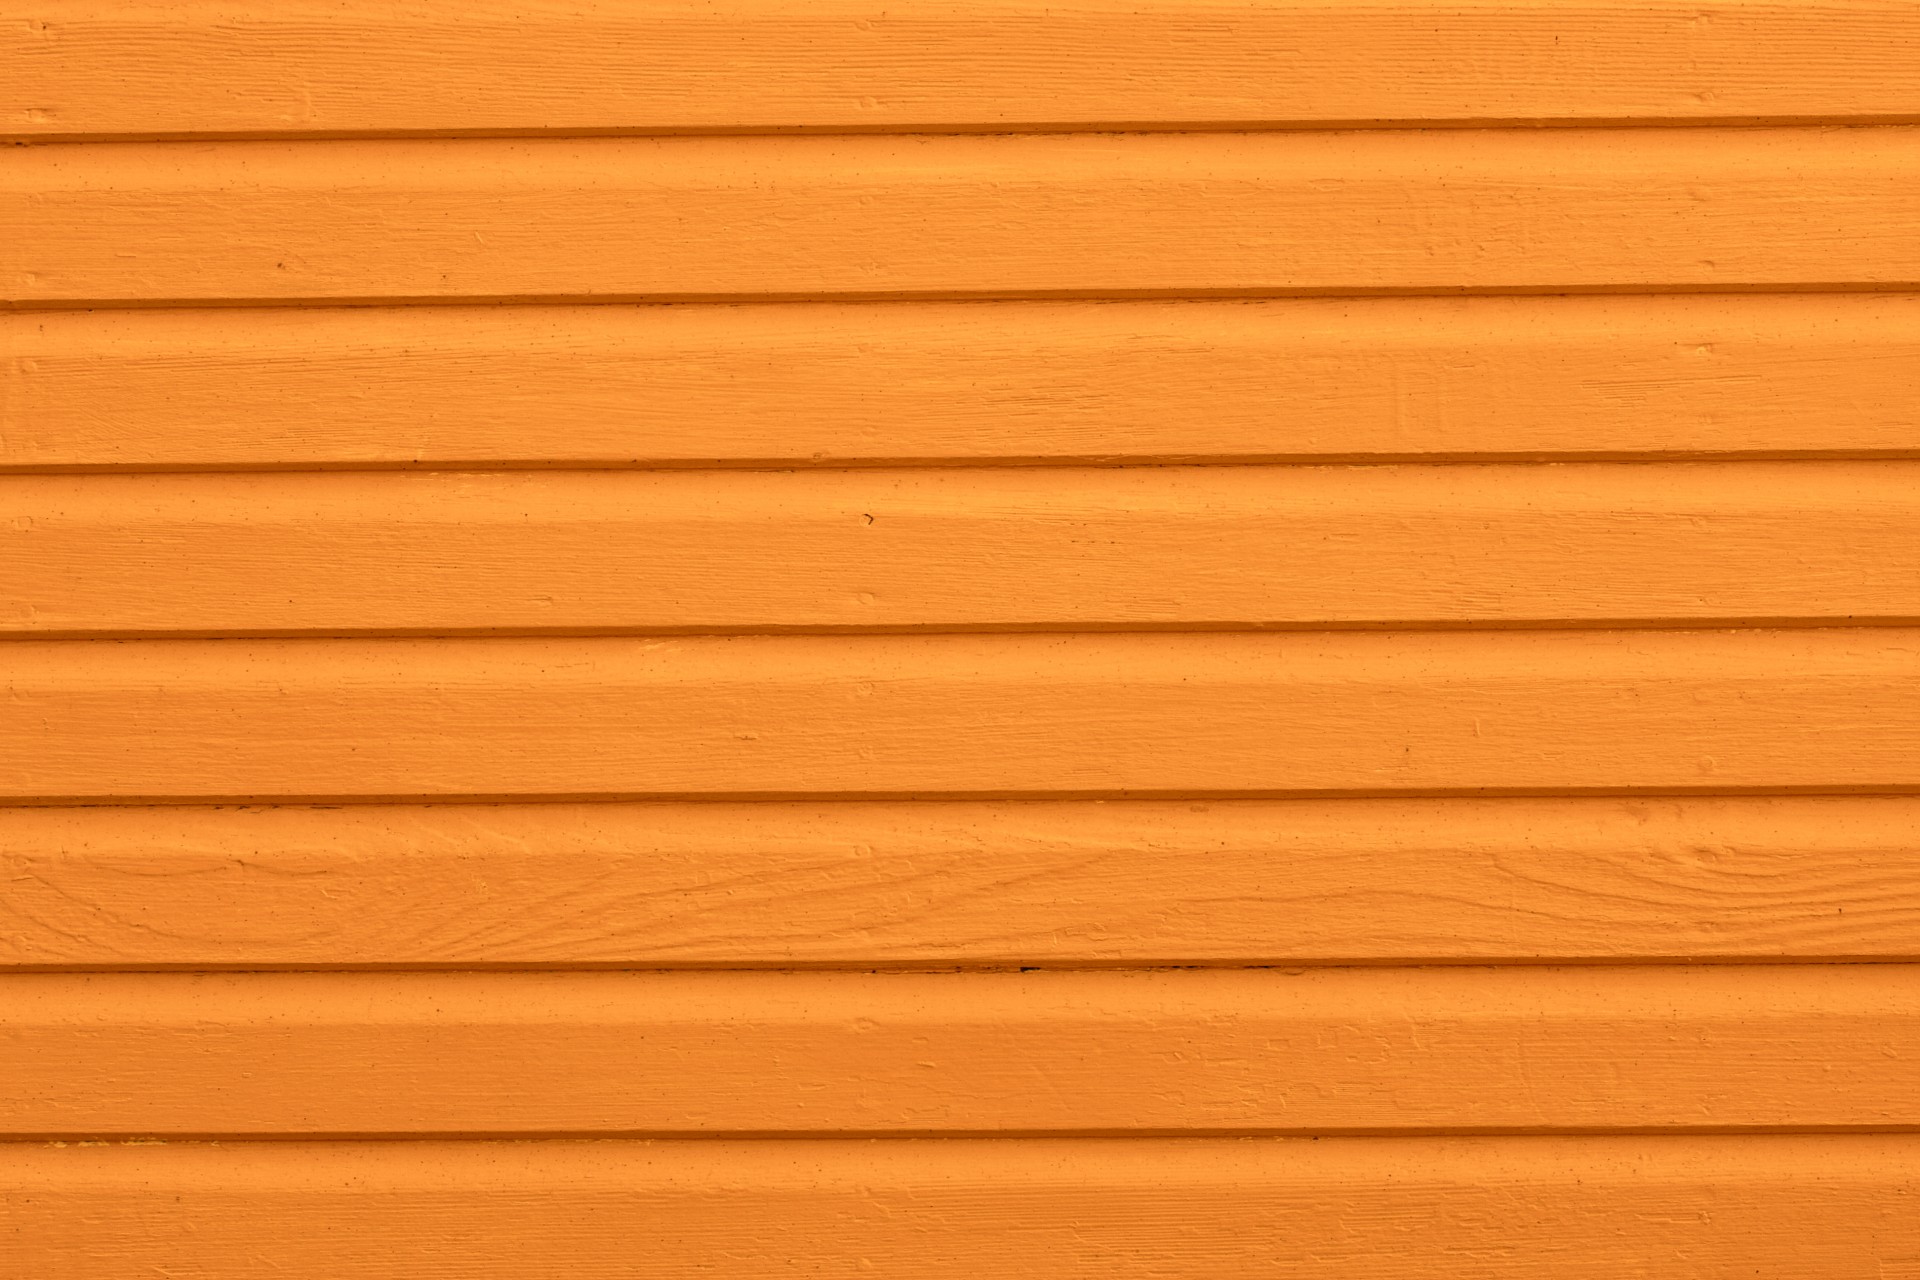 Hình nền giấy dán tường với họa tiết gỗ vân cam sẽ làm căn phòng của bạn trở nên nổi bật và ấm cúng hơn bao giờ hết. Bạn sẽ tìm thấy bộ sưu tập hình ảnh dưới đây rất đặc biệt vì nó sở hữu vân gỗ rực rỡ và mịn màng, và đến từ những nguồn cung cấp đáng tin cậy nhất trên thị trường.